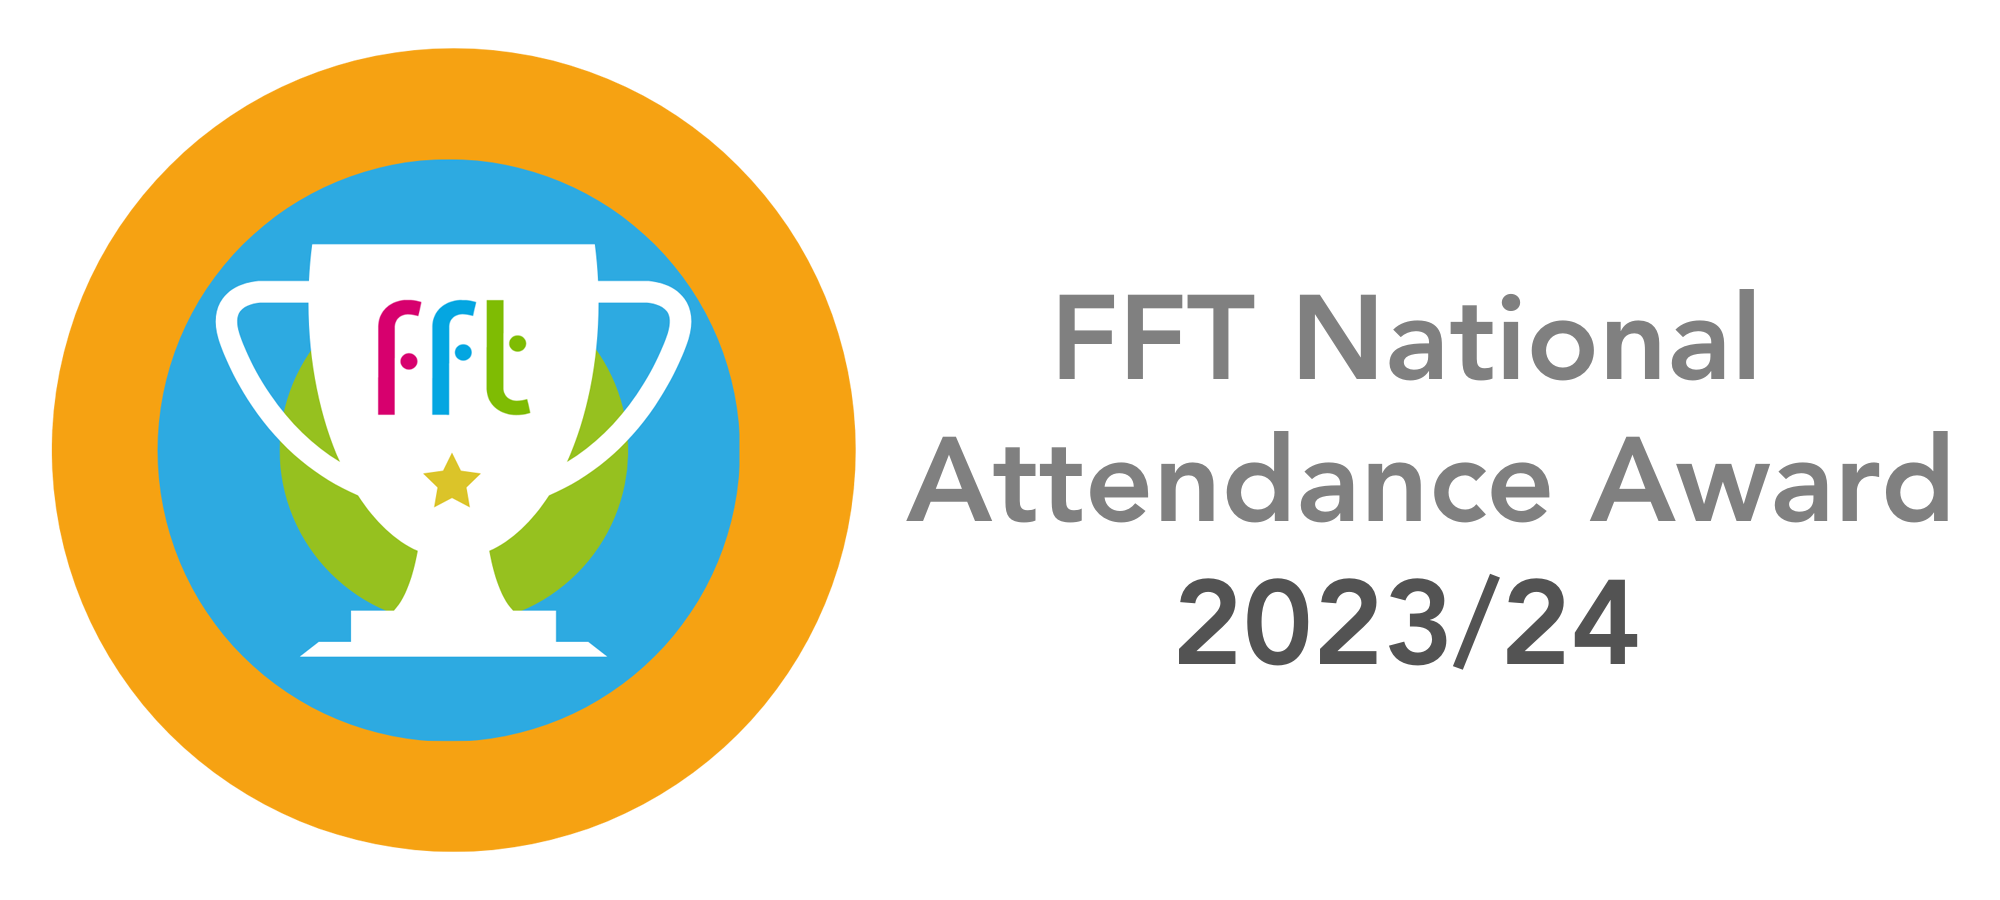 fft attendance award